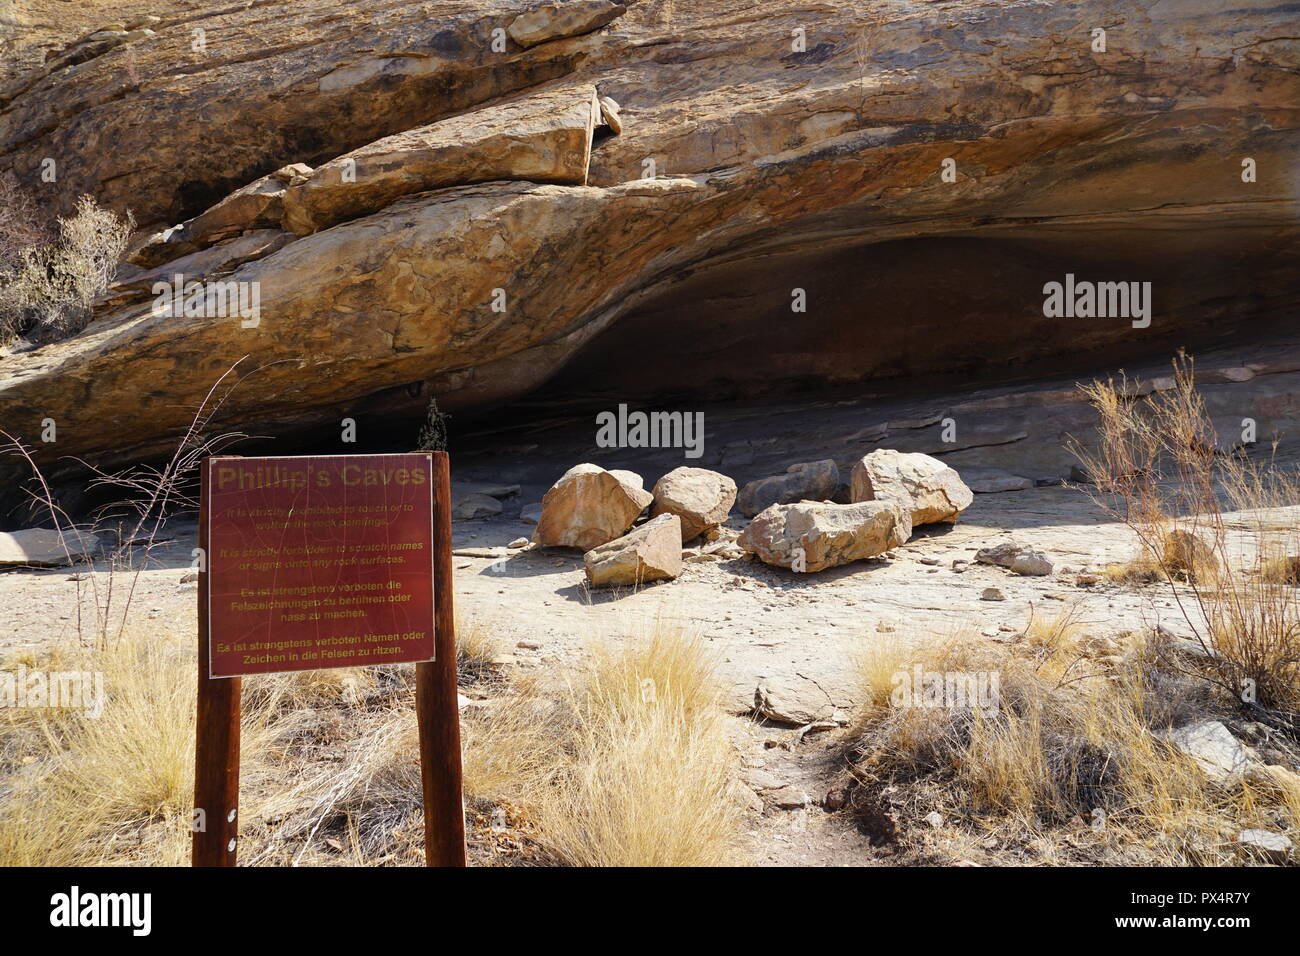 Phillips-Höhle, vermutlich ehemals Wohnstätte der San, Ameib-Farm Erongogebirge im, Namibia, Afrika Foto Stock